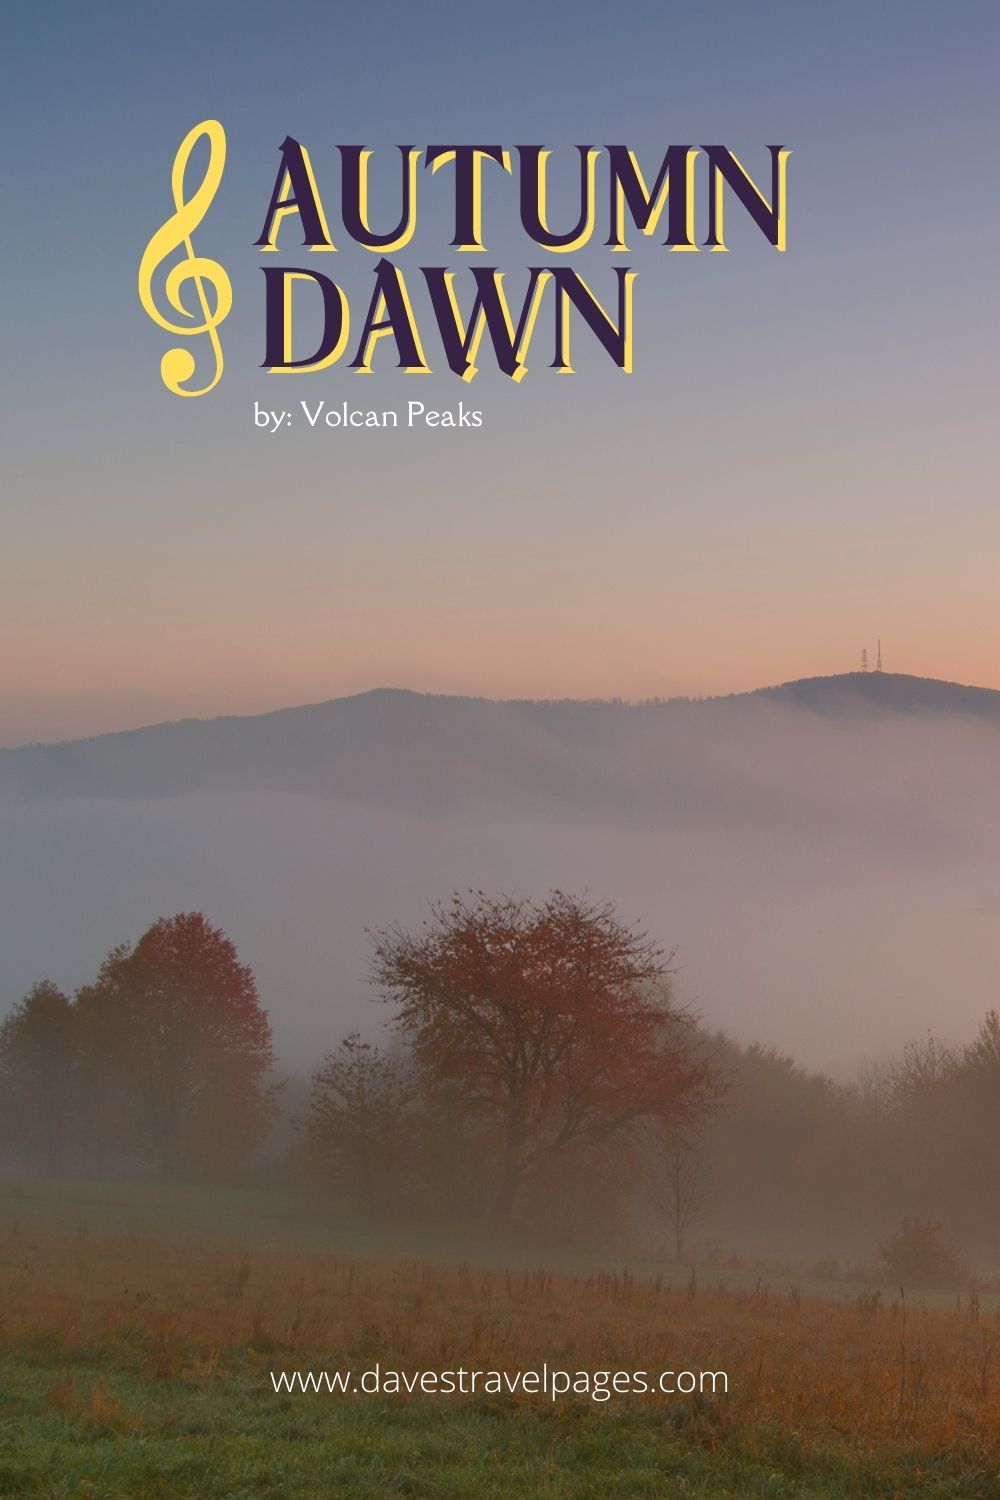 Wanderlust songs: “Autumn Dawn” by Volcan Peaks